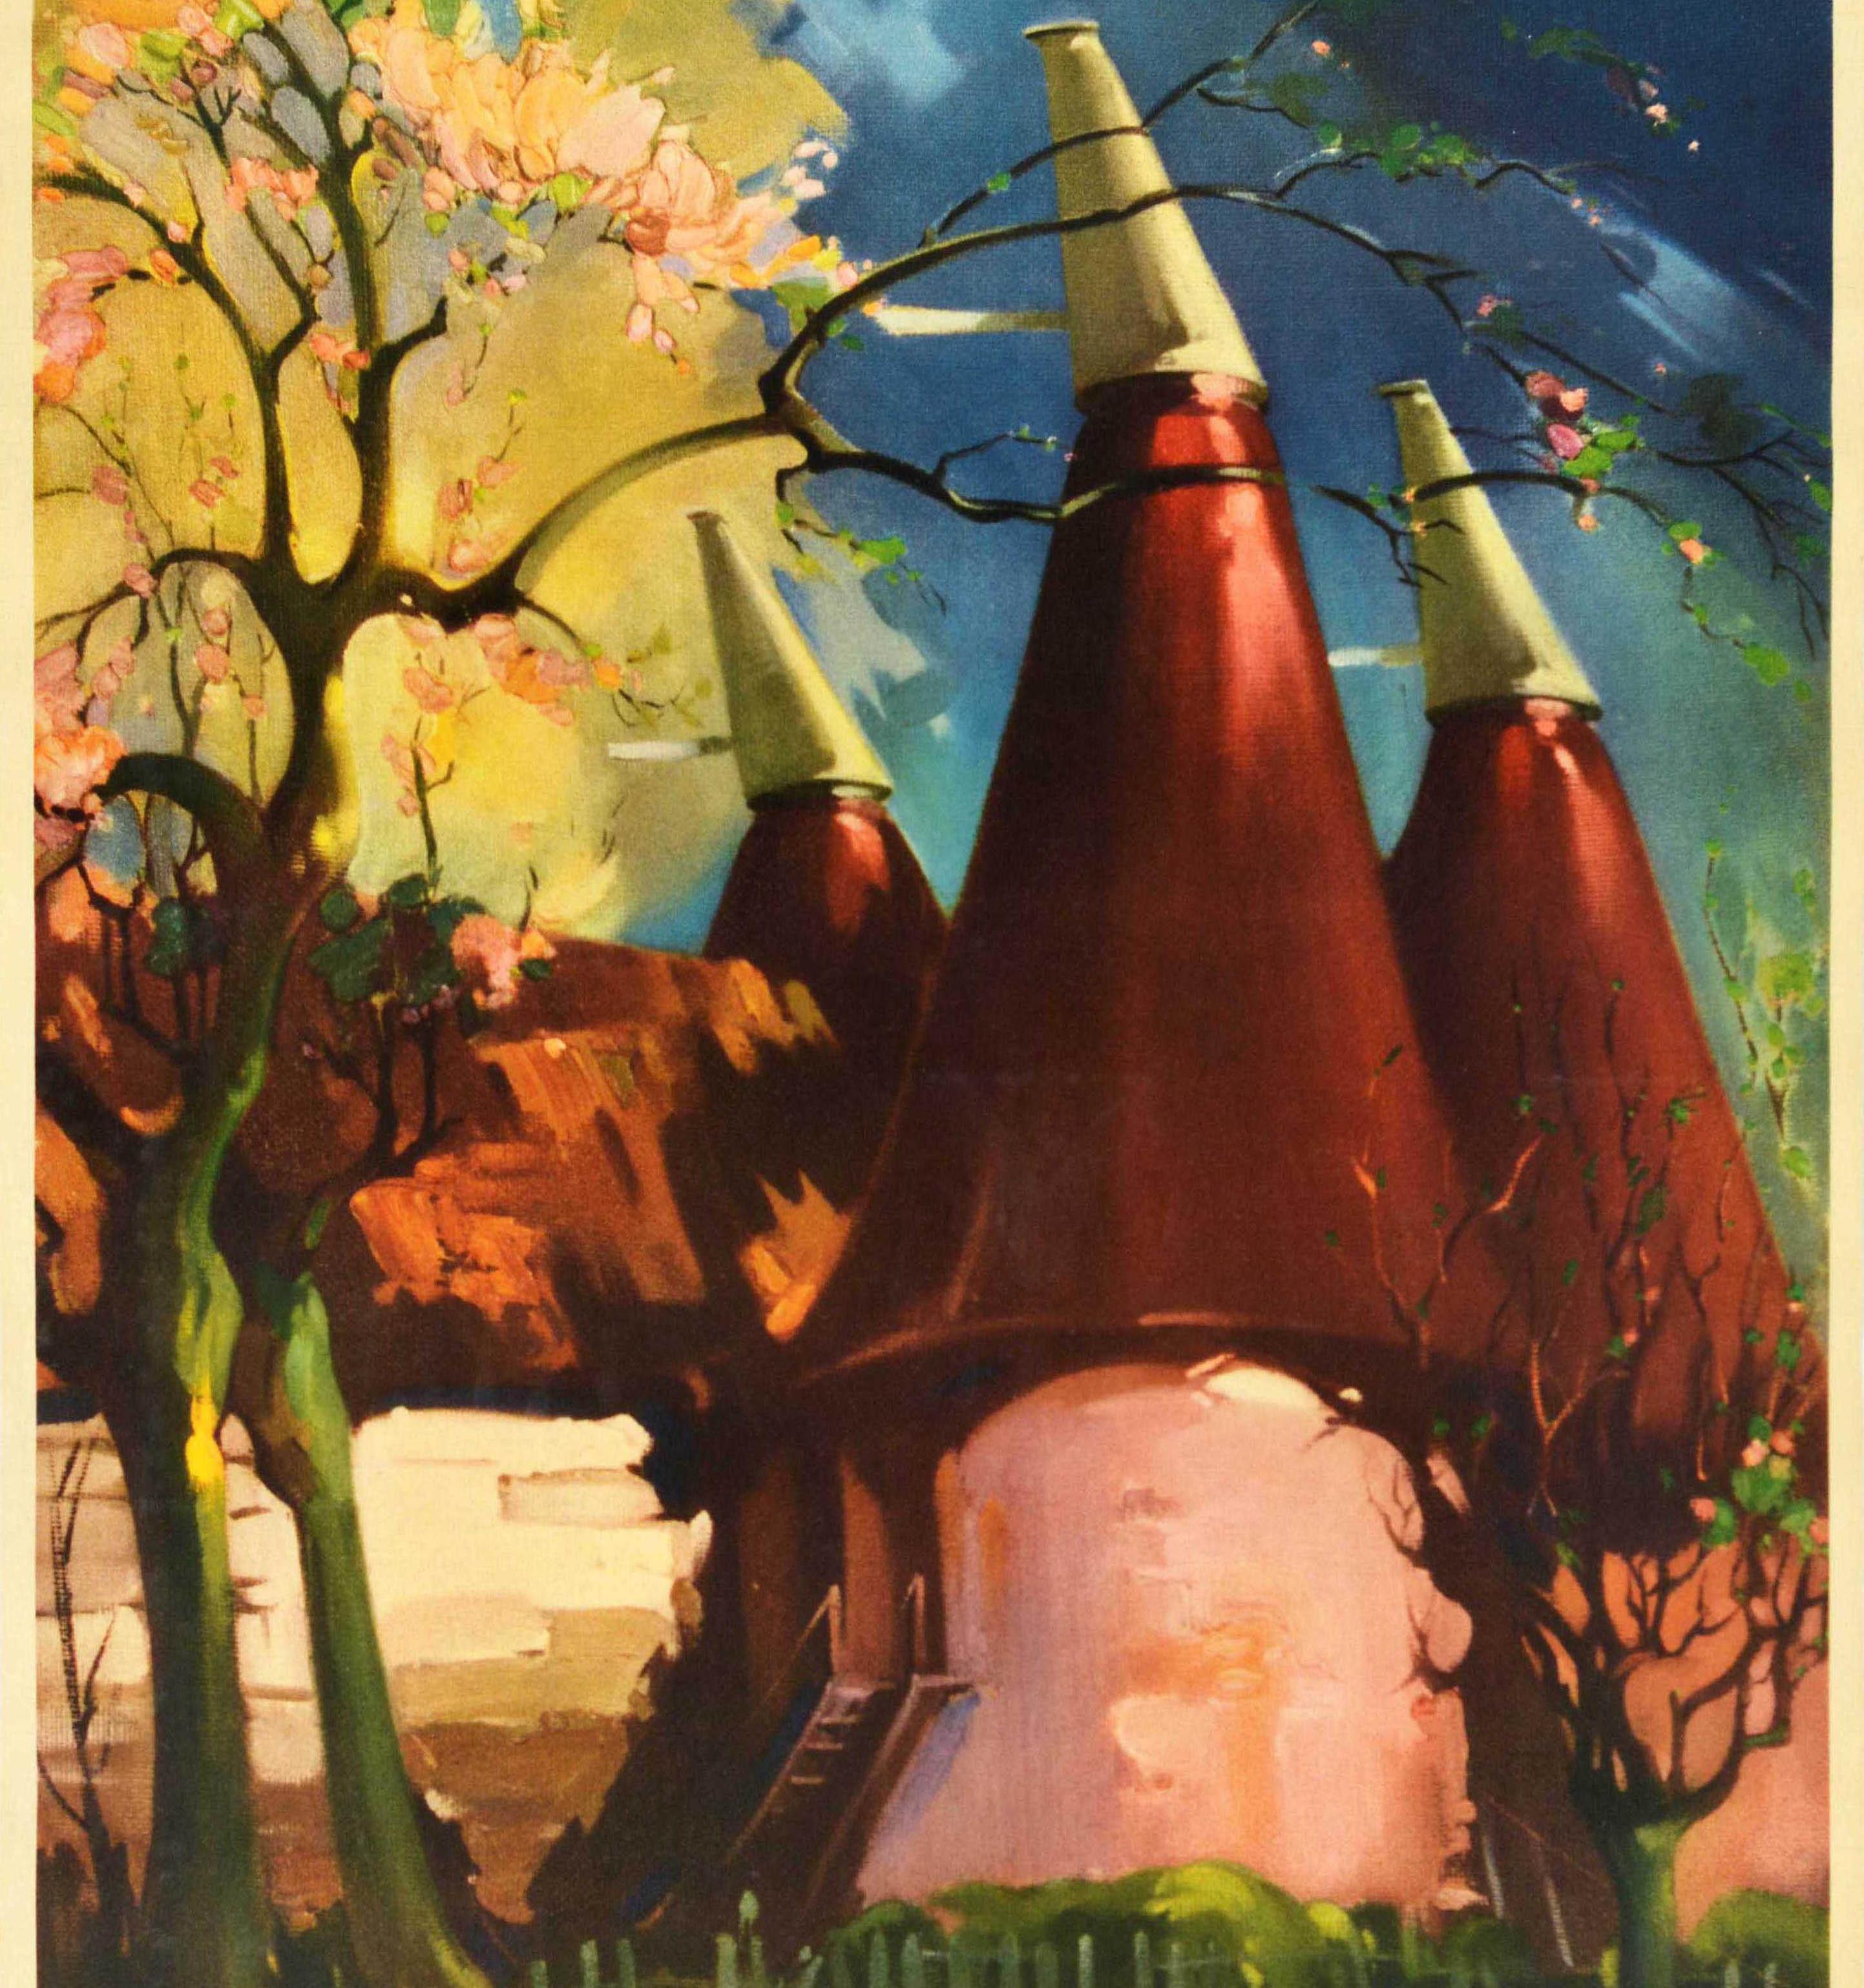 Originales Vintage-Reiseplakat für Kent, das von British Railways bedient wird, mit einer farbenfrohen Illustration des bekannten Malers und Plakatkünstlers Claude Buckle (1905-1973), die traditionelle Gasthäuser und blühende Bäume in Frühlingsblüte